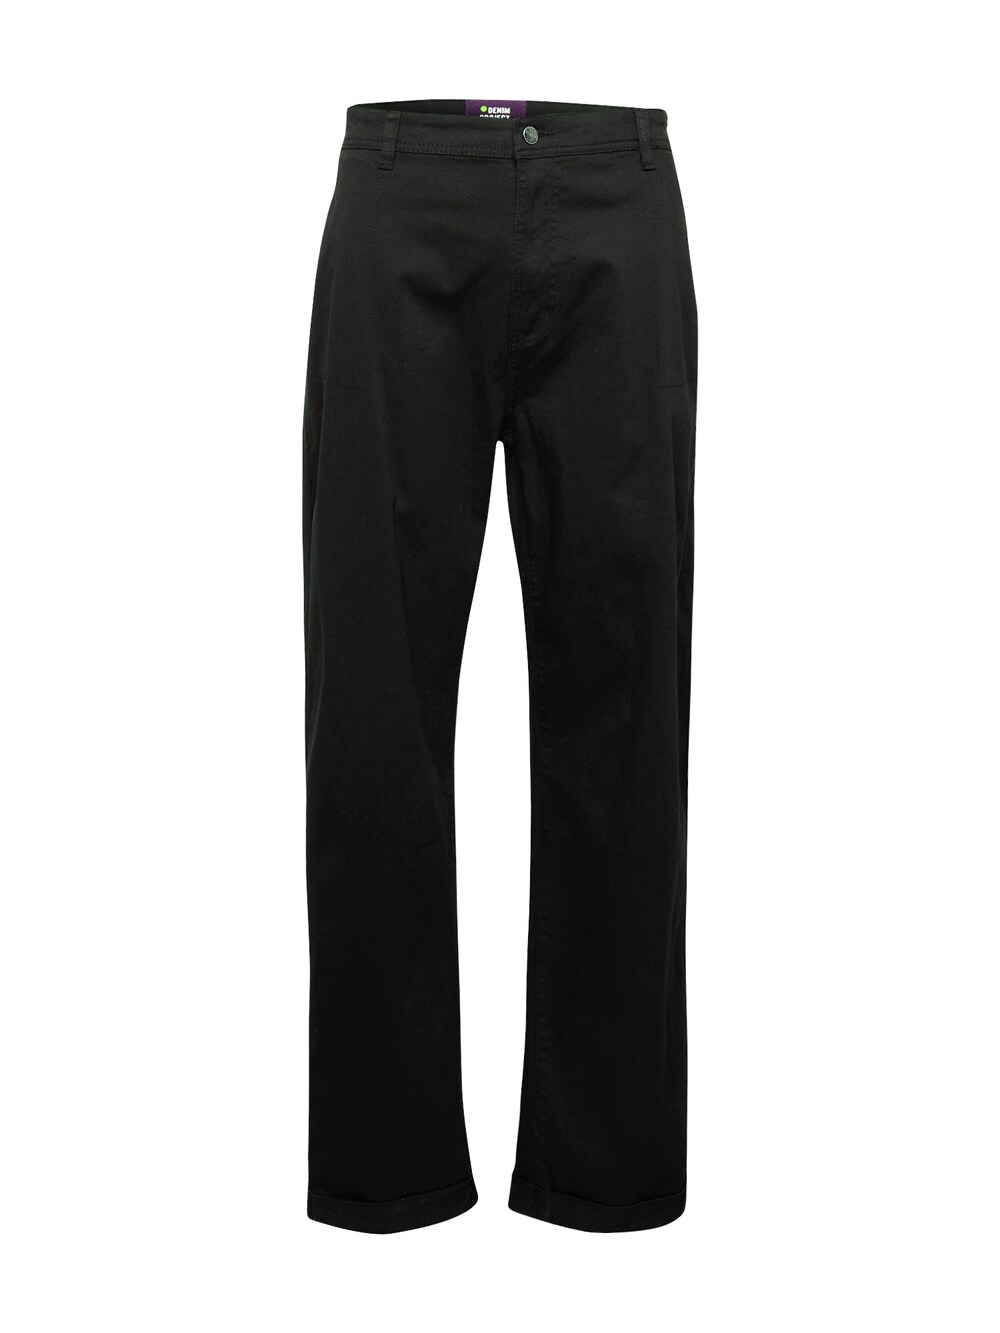 Обычные брюки чинос Denim Project, черный обычные брюки чинос 11 project бежевый